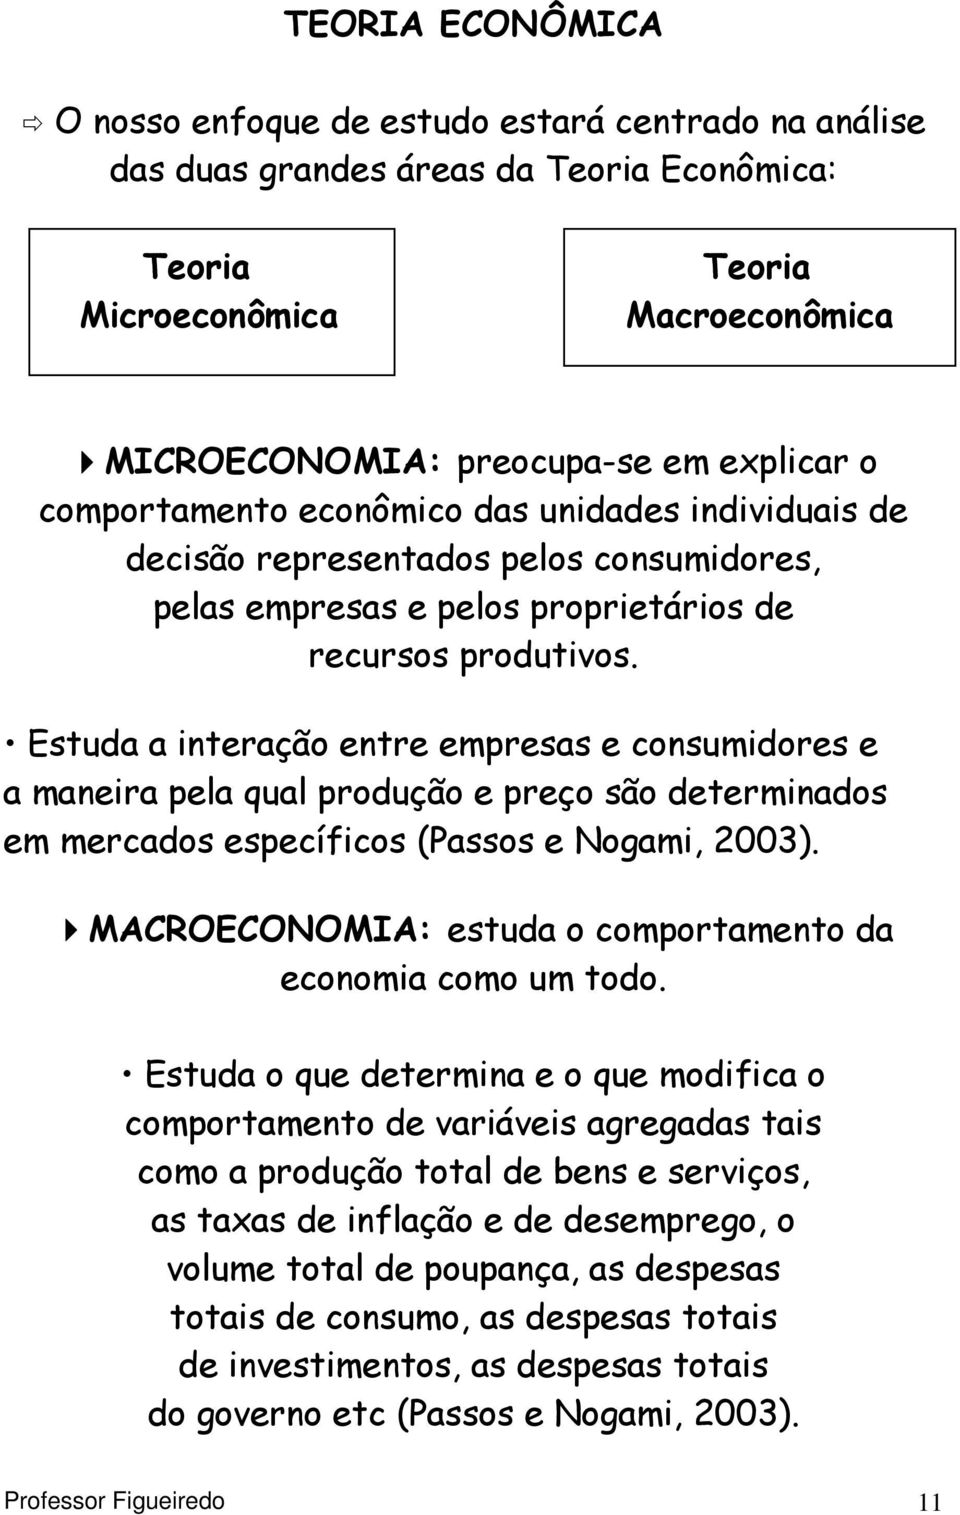 Estuda a interação entre empresas e consumidores e a maneira pela qual produção e preço são determinados em mercados específicos (Passos e Nogami, 2003).